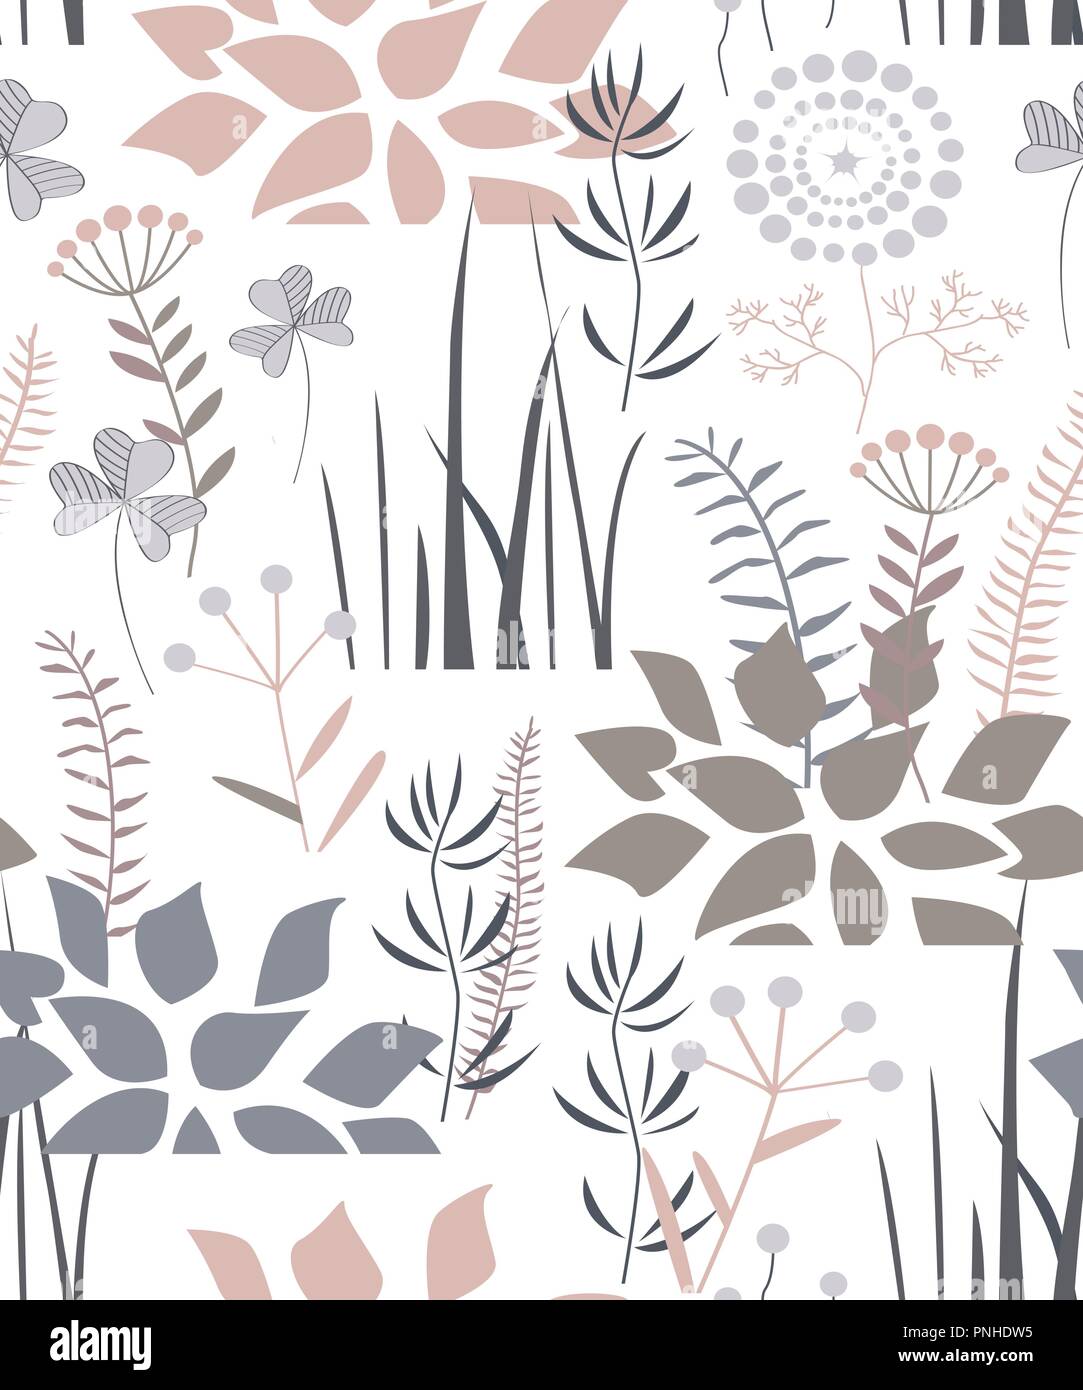 Transparente avec motif floral doodle plantes, fleurs, buissons, et de l'herbe. Agréable gris pastel, rose, brun et de palette. Vector illustration Illustration de Vecteur